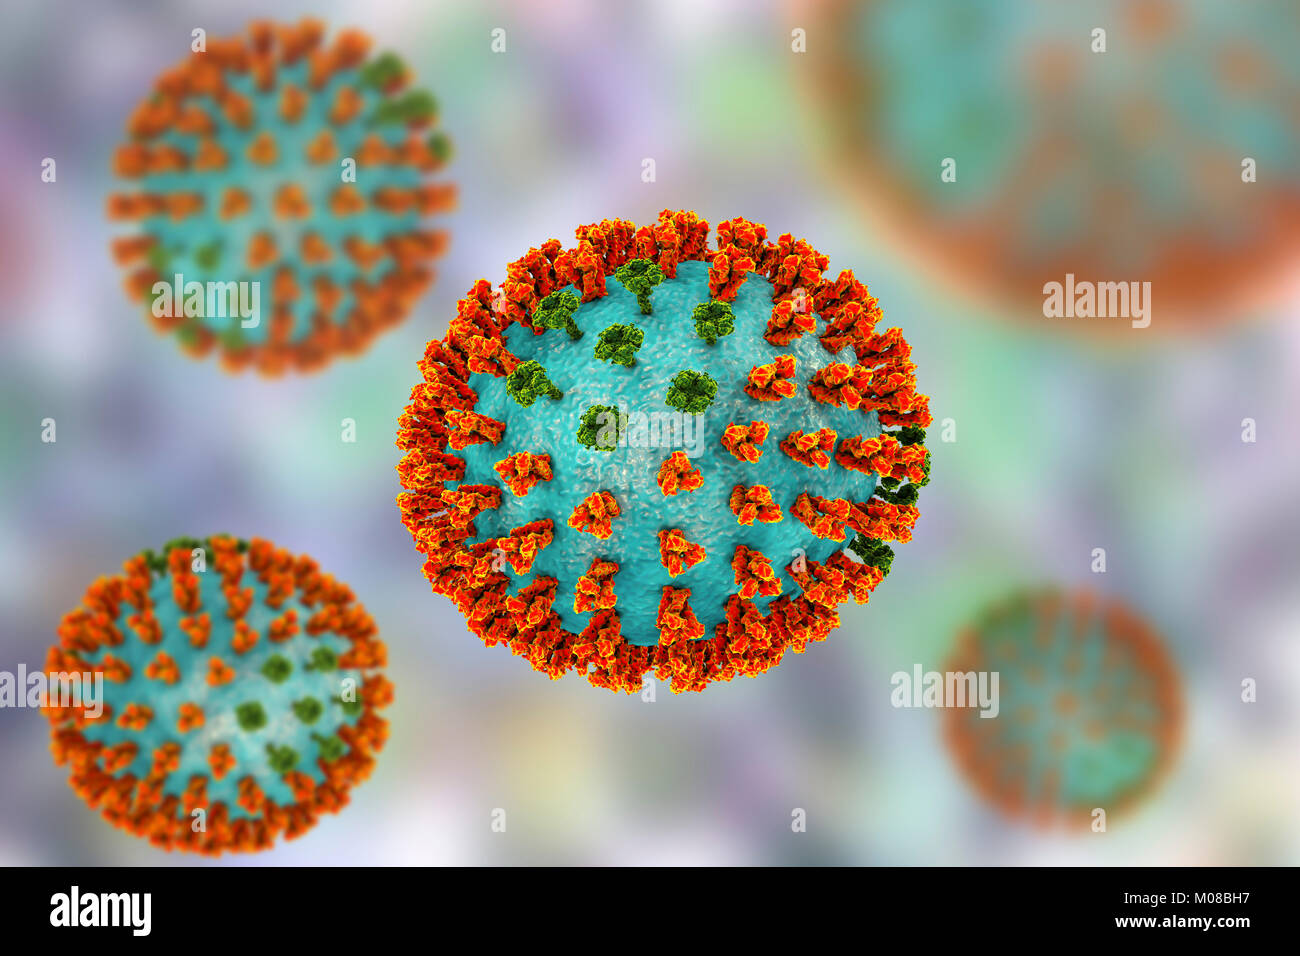 Virus influenzali di ceppo H3N2. 3D illustrazione che mostra la superficie dei picchi di glicoproteina emoagglutinina (arancione) e neuraminidasi (verde) su un influenza (flu) particella di virus. Con emoagglutinina svolge un ruolo in attacco del virus respiratorio umano cellule. Neuraminidasi gioca un ruolo nel rilascio di nuova formazione di particelle di virus da una cellula infettata. H3N2 virus sono in grado di infettare gli uccelli e i mammiferi così come gli esseri umani. Essi sono spesso causa di più gravi infezioni nei giovani e anziani rispetto ad altri ceppi influenzali e può portare ad aumenti di ricoveri e decessi. Foto Stock